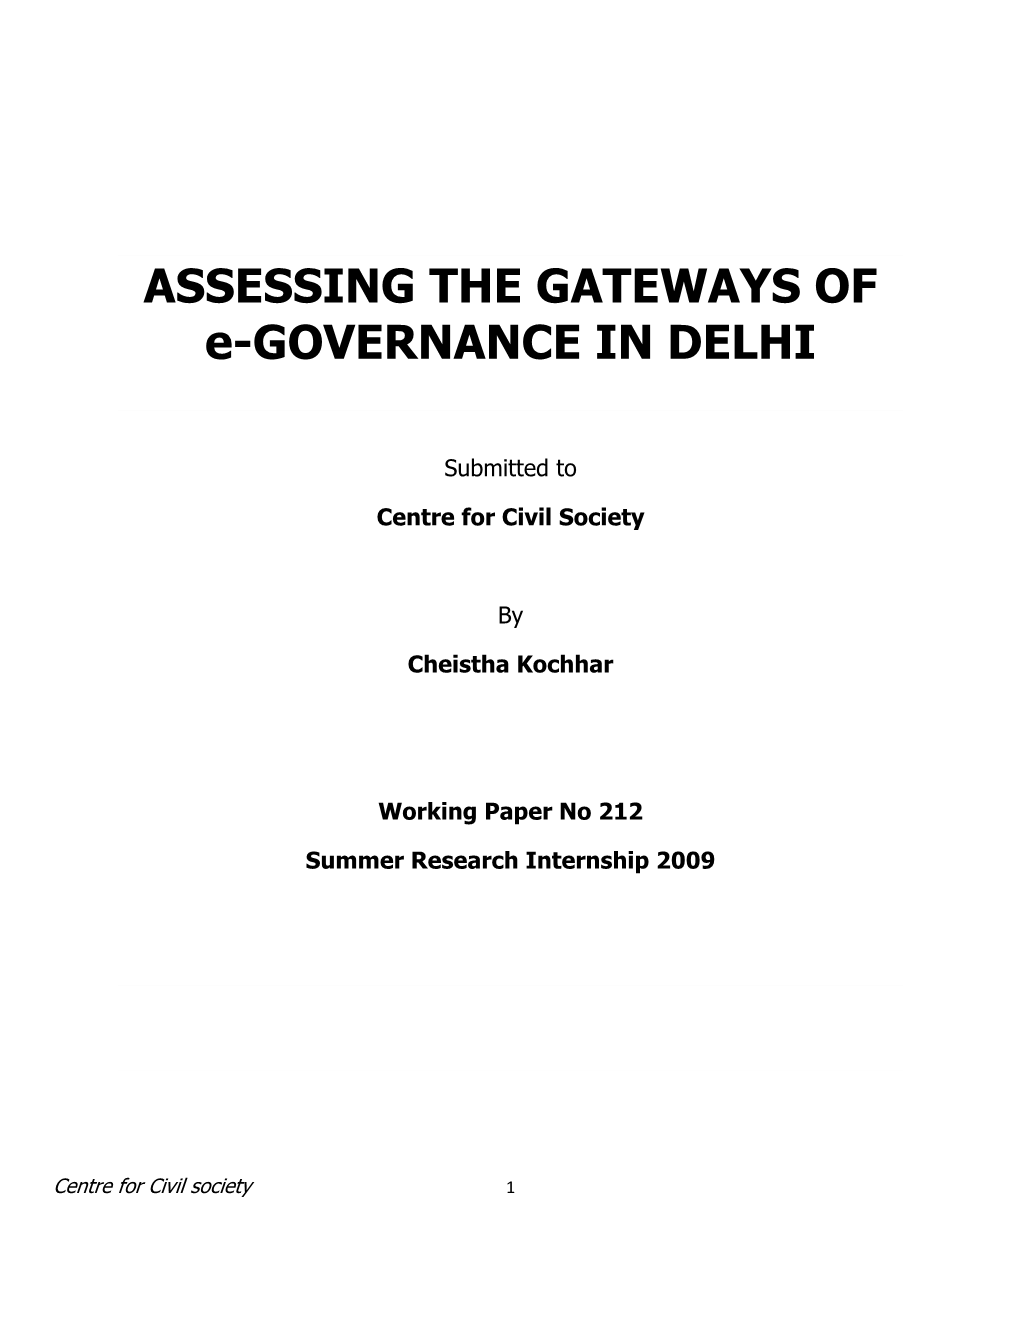 ASSESSING the GATEWAYS of E-GOVERNANCE in DELHI